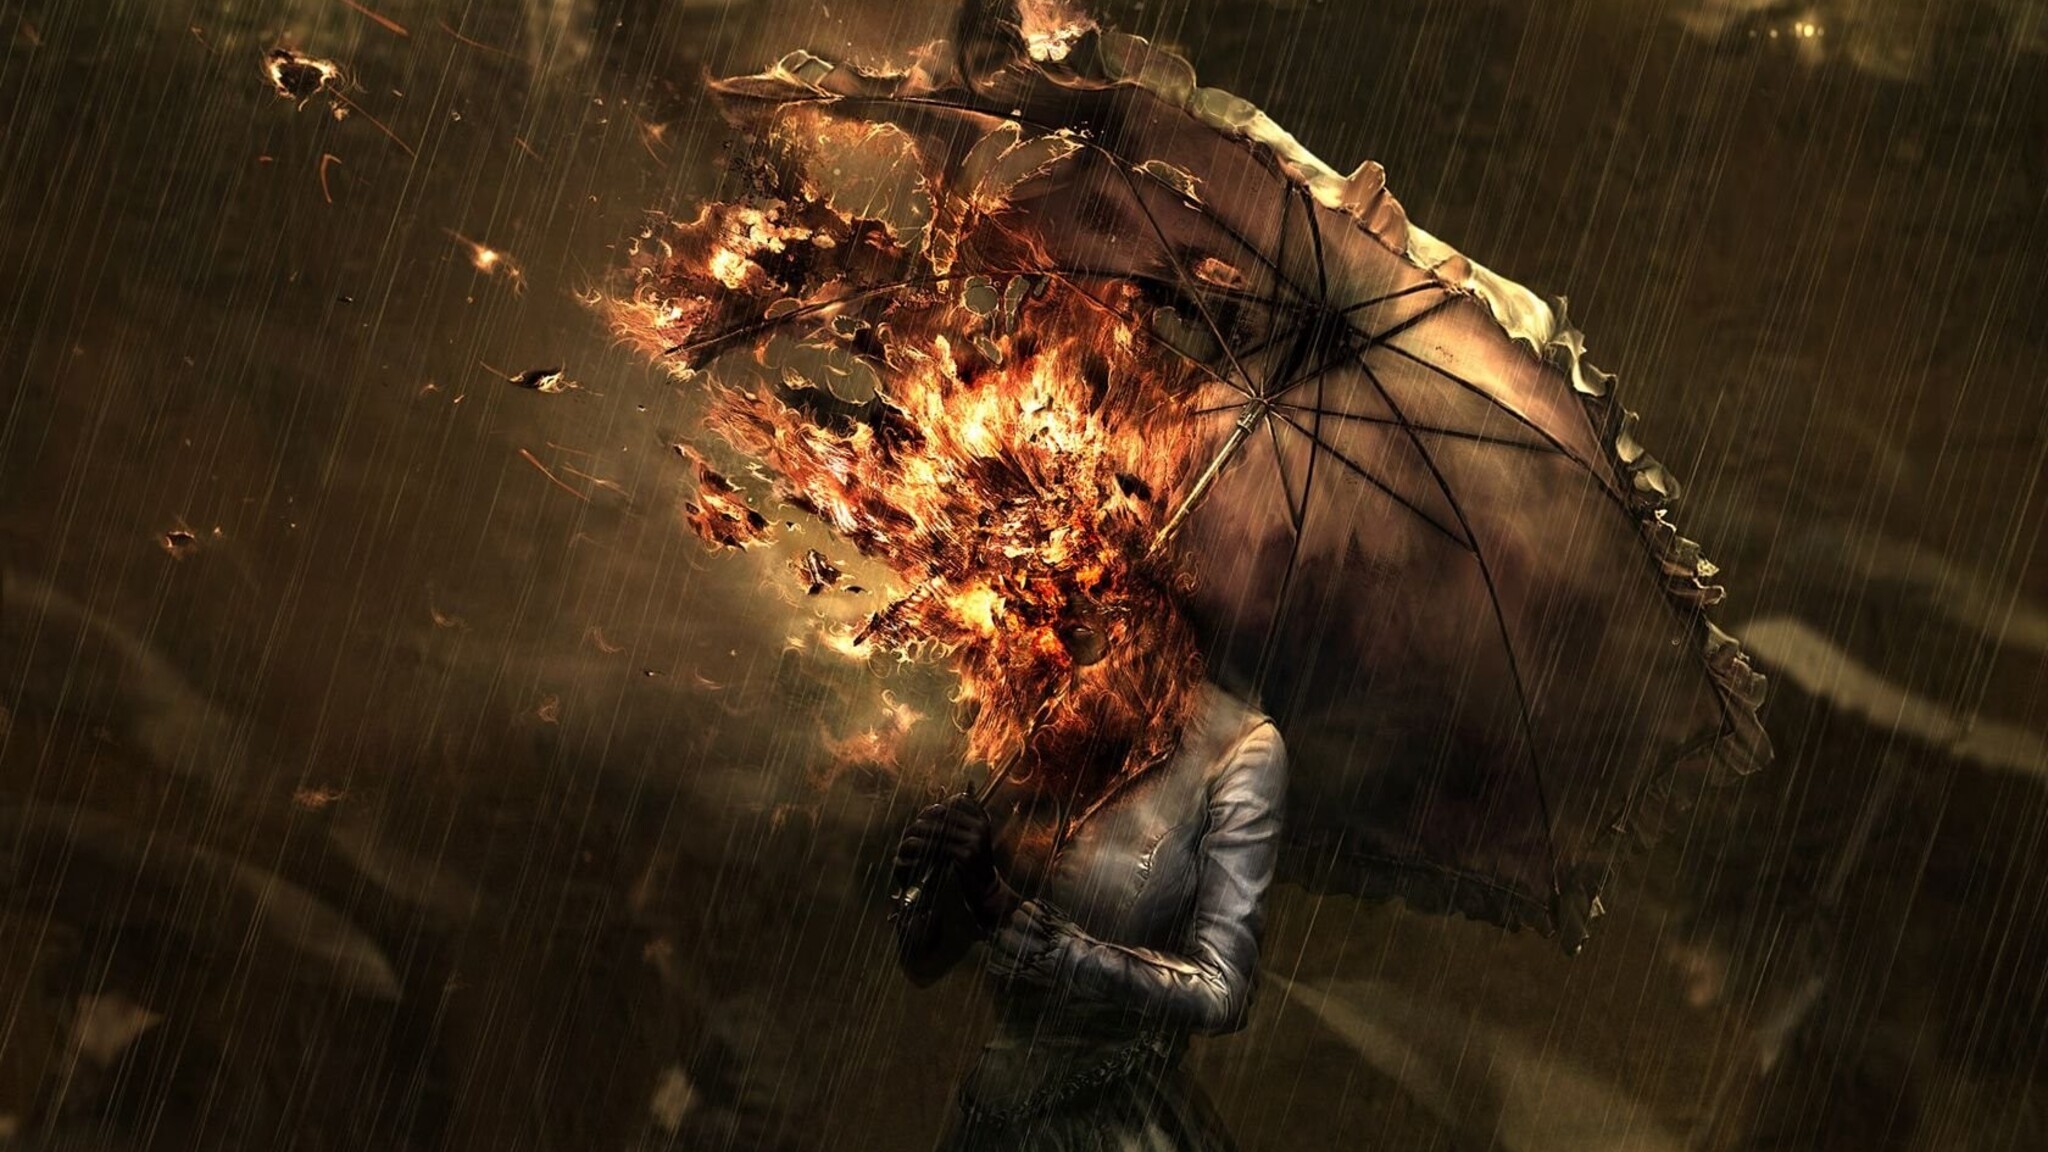 Красивые картинки - Страница 3 Burning-umbrella-girl-wide-2048x1152